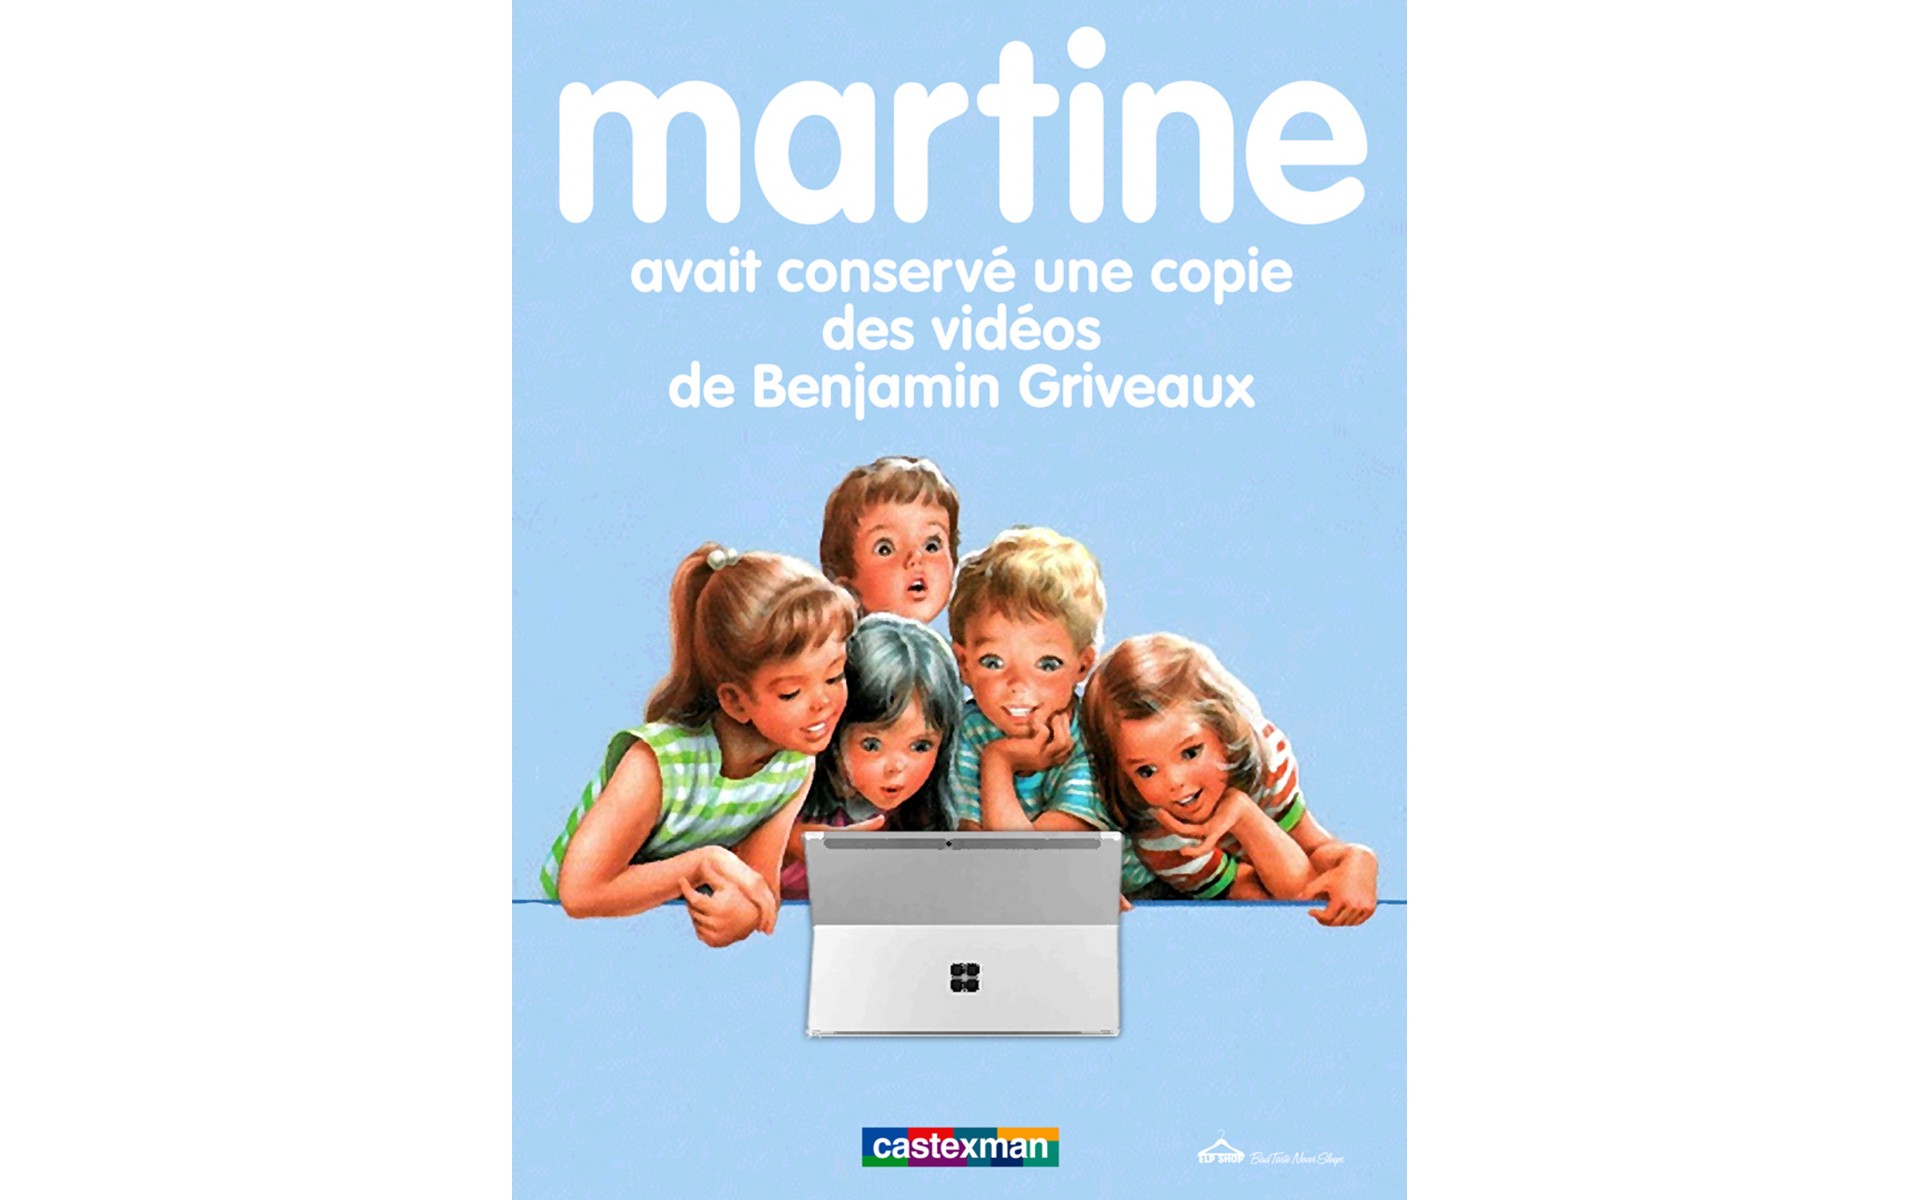 Martine avait conservé une copie des vidéos de Benjamin Griveaux.